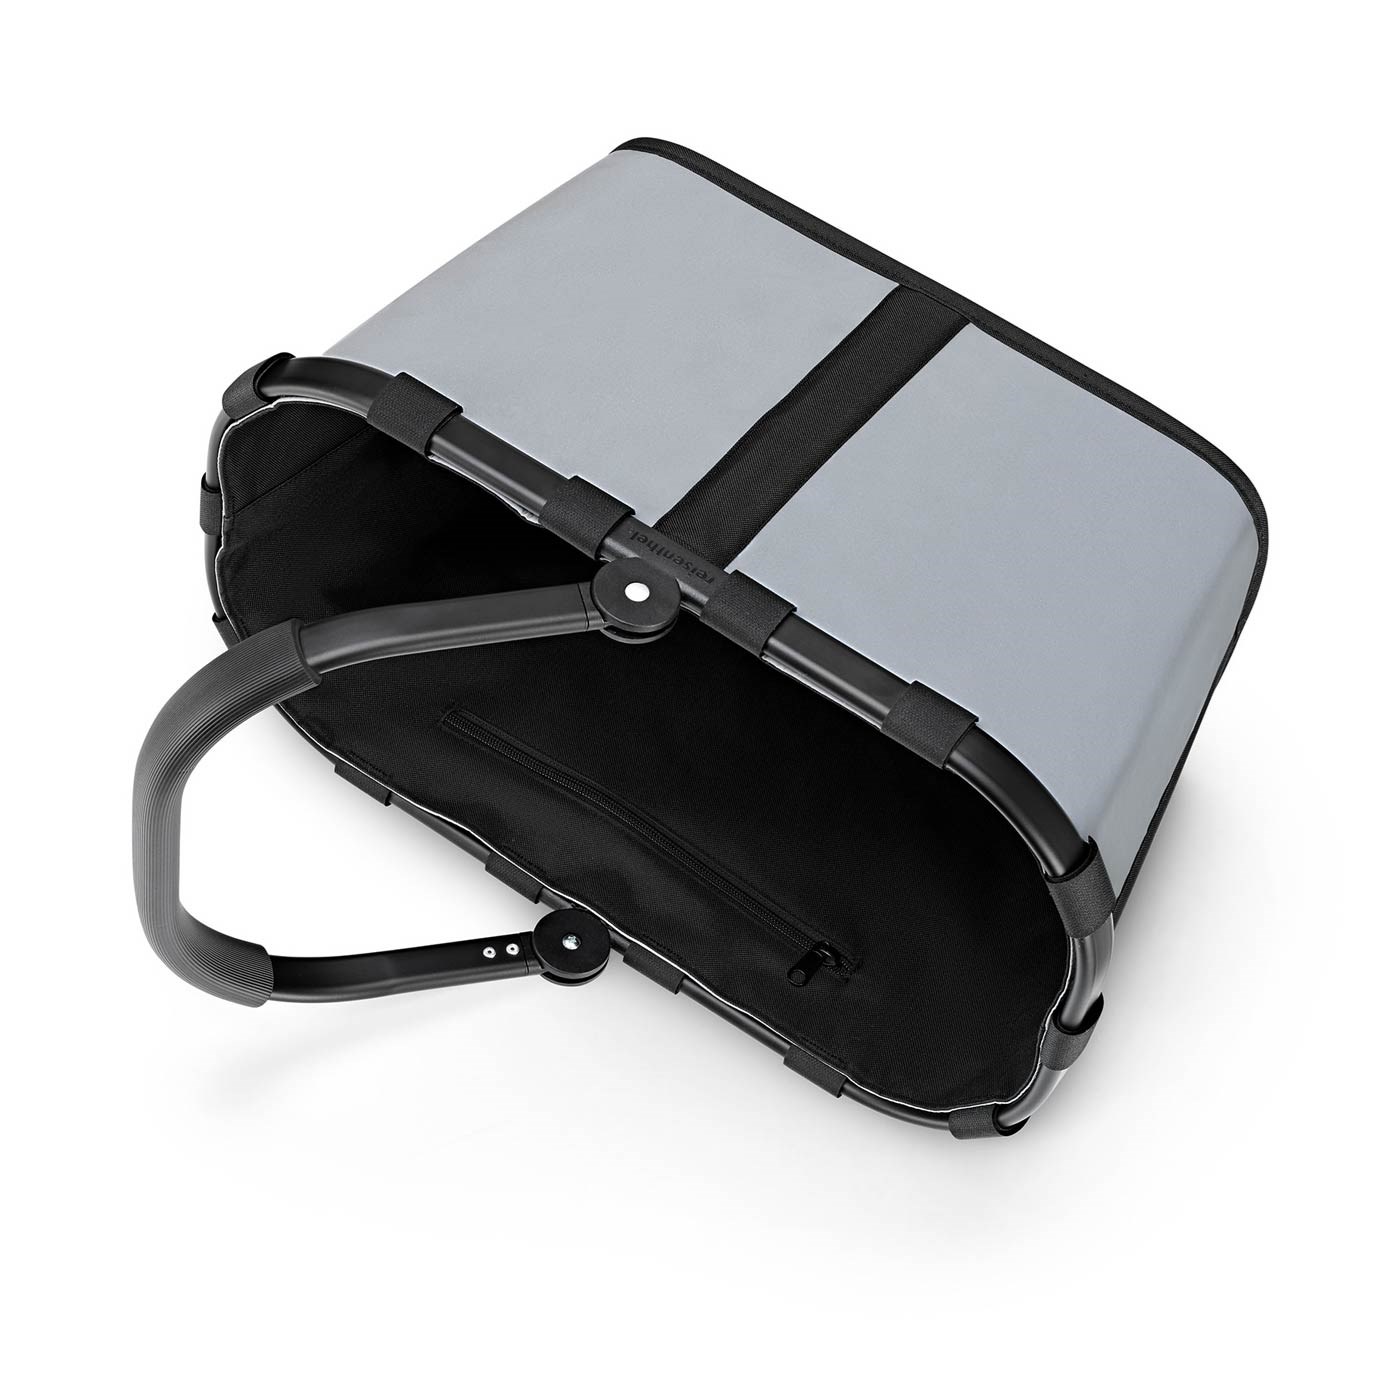 Nákupní košík Carrybag frame reflective_3